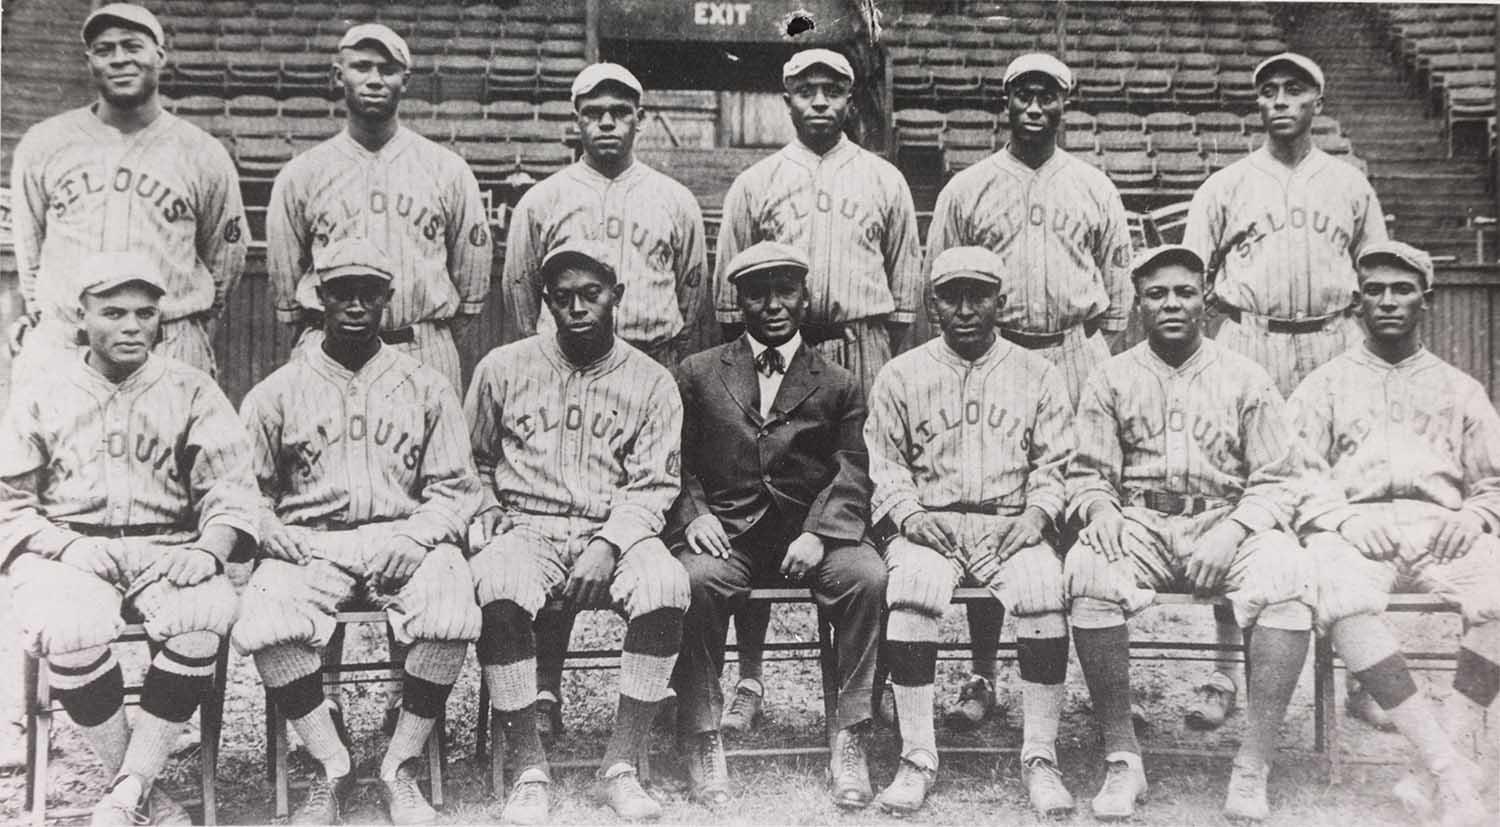 Negro Leagues Baseball - Topics on